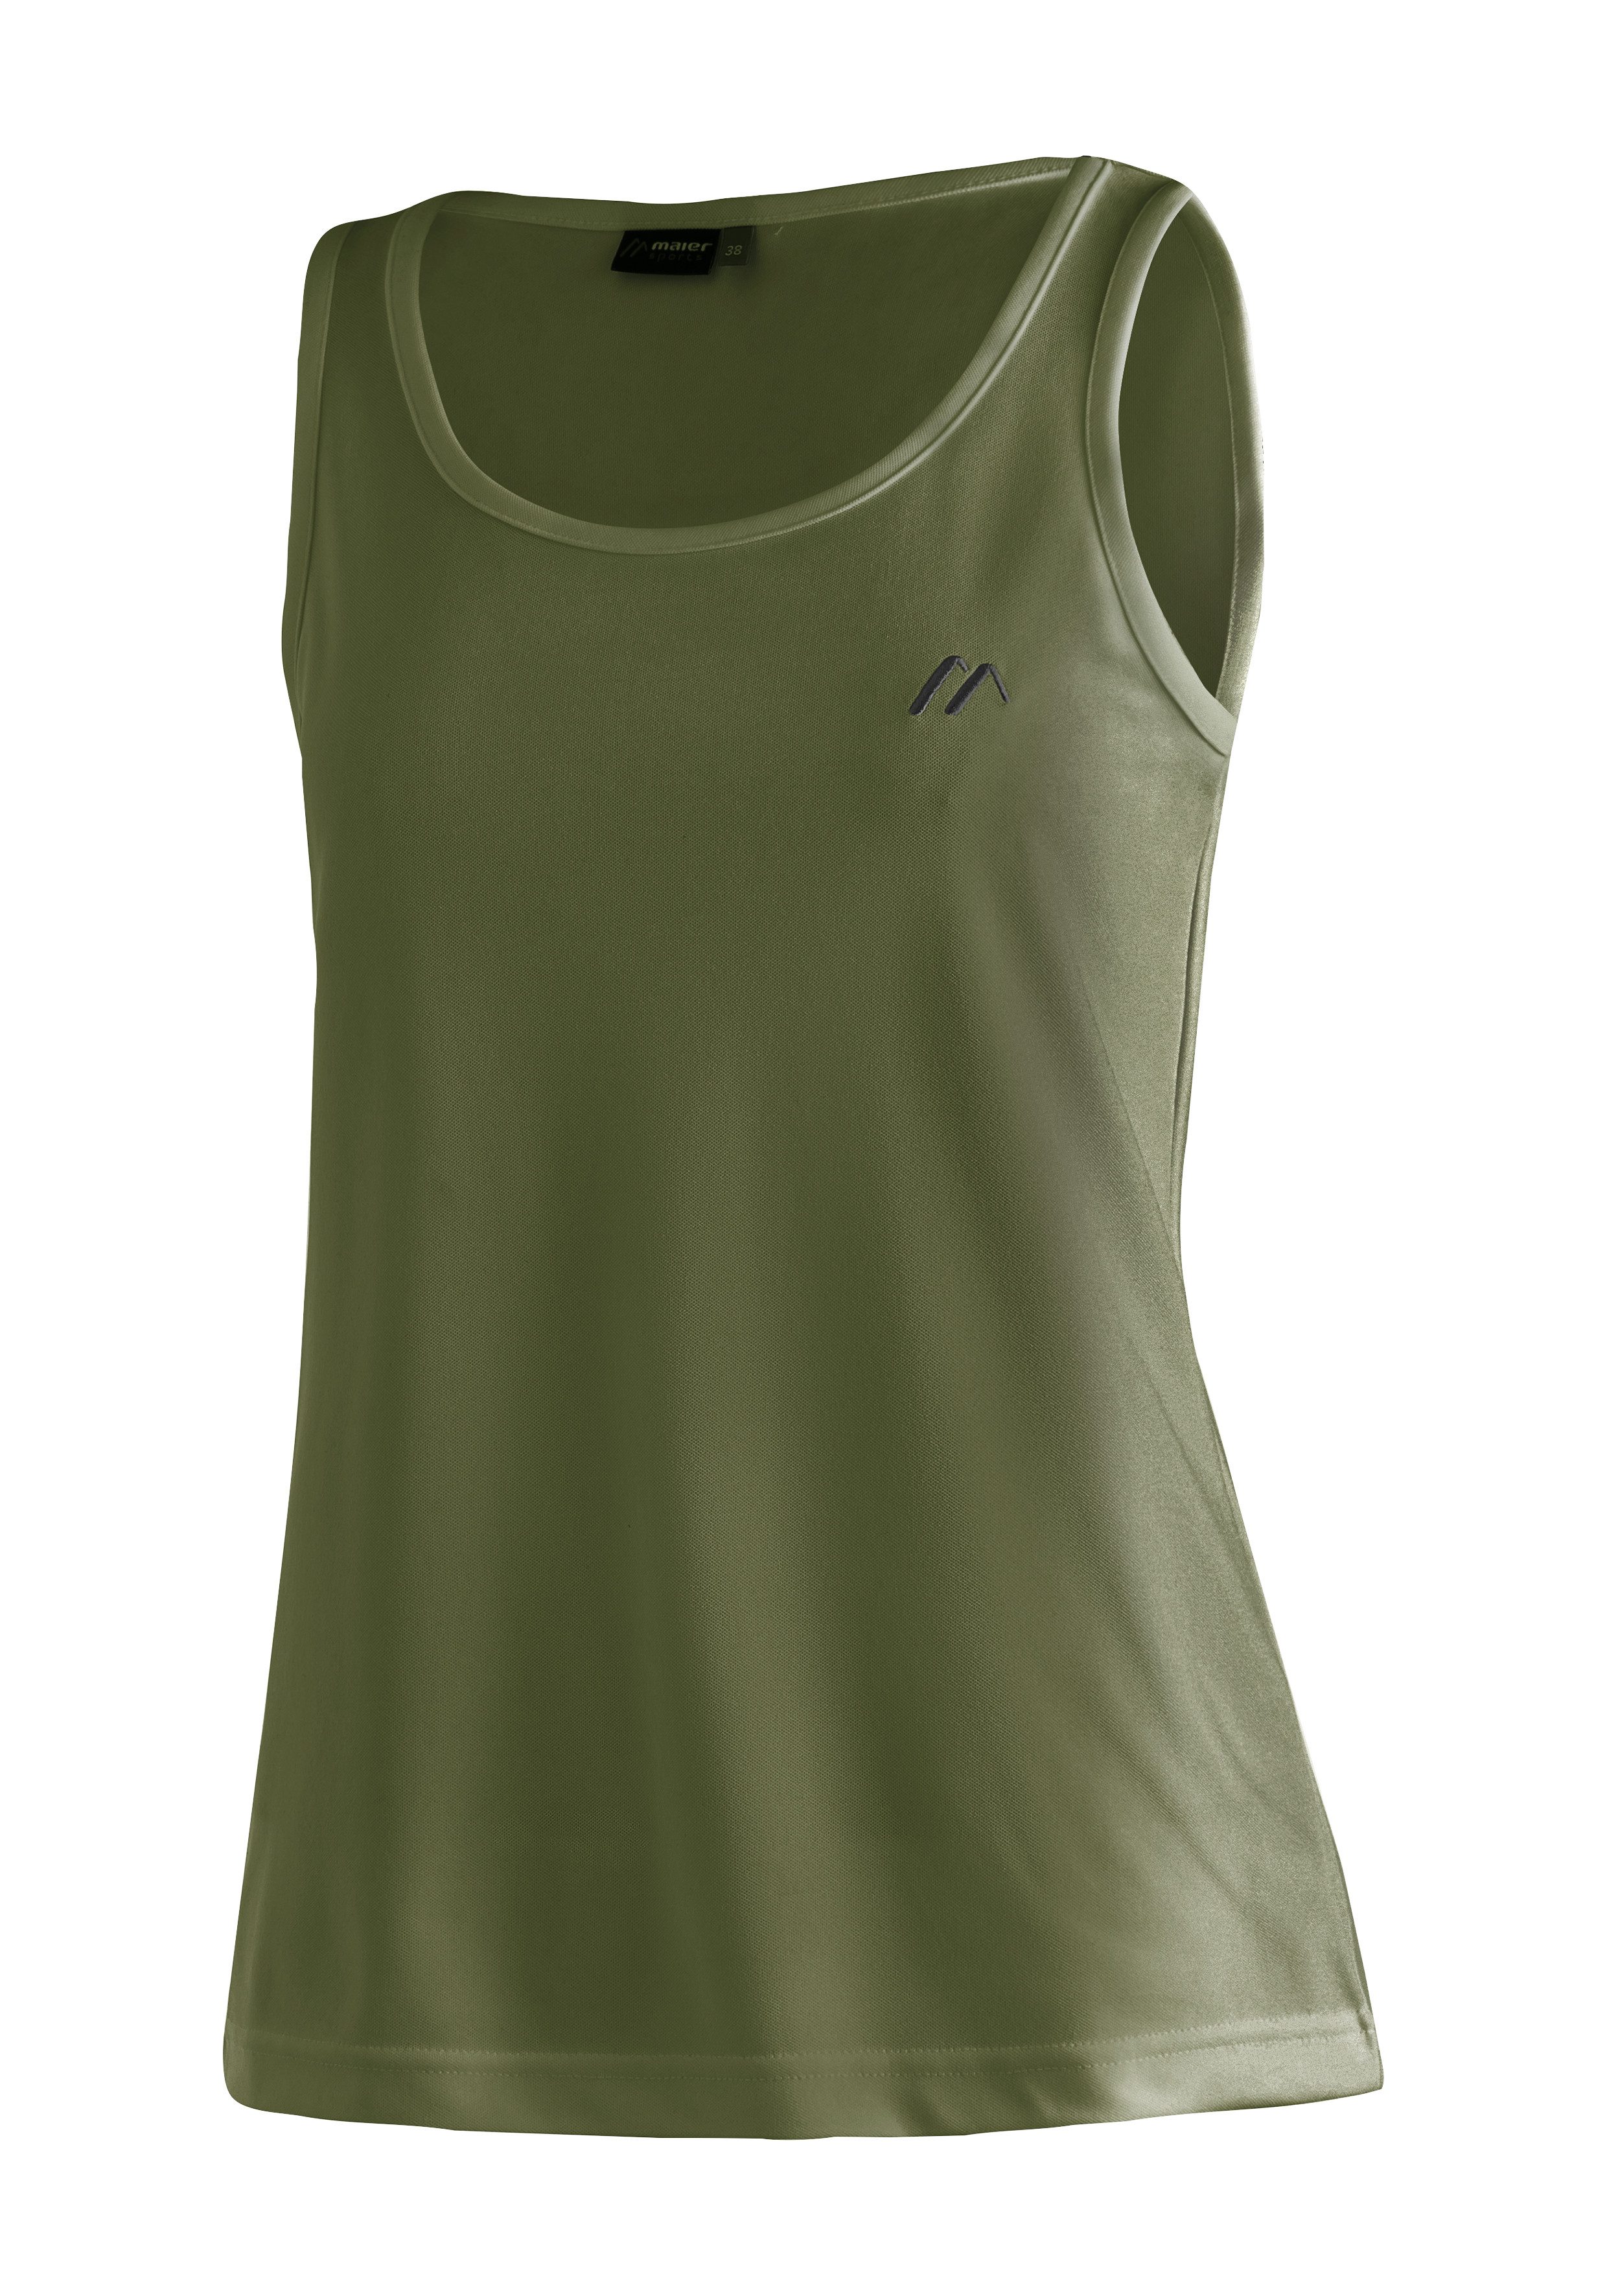 maier sports functioneel shirt petra damestanktop voor sport en outdooractiviteiten, mouwloos shirt groen